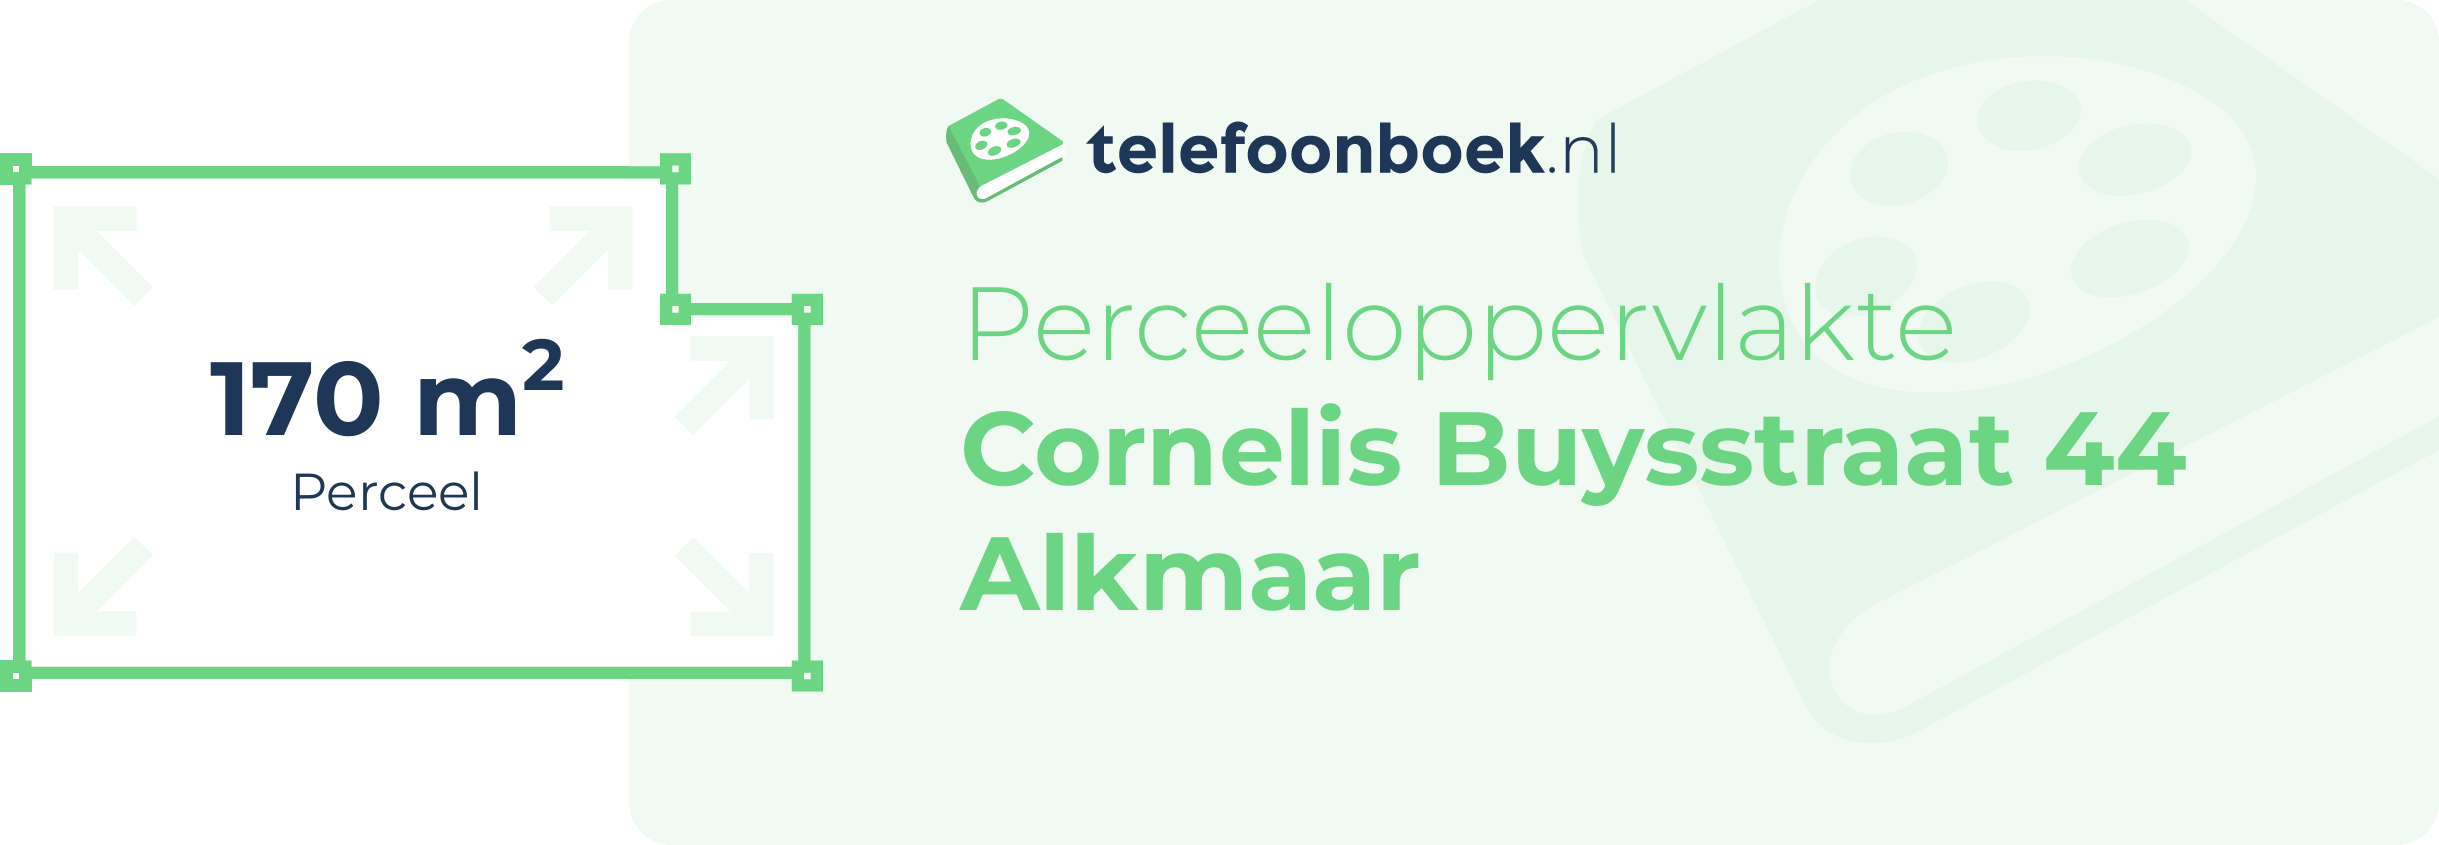 Perceeloppervlakte Cornelis Buysstraat 44 Alkmaar